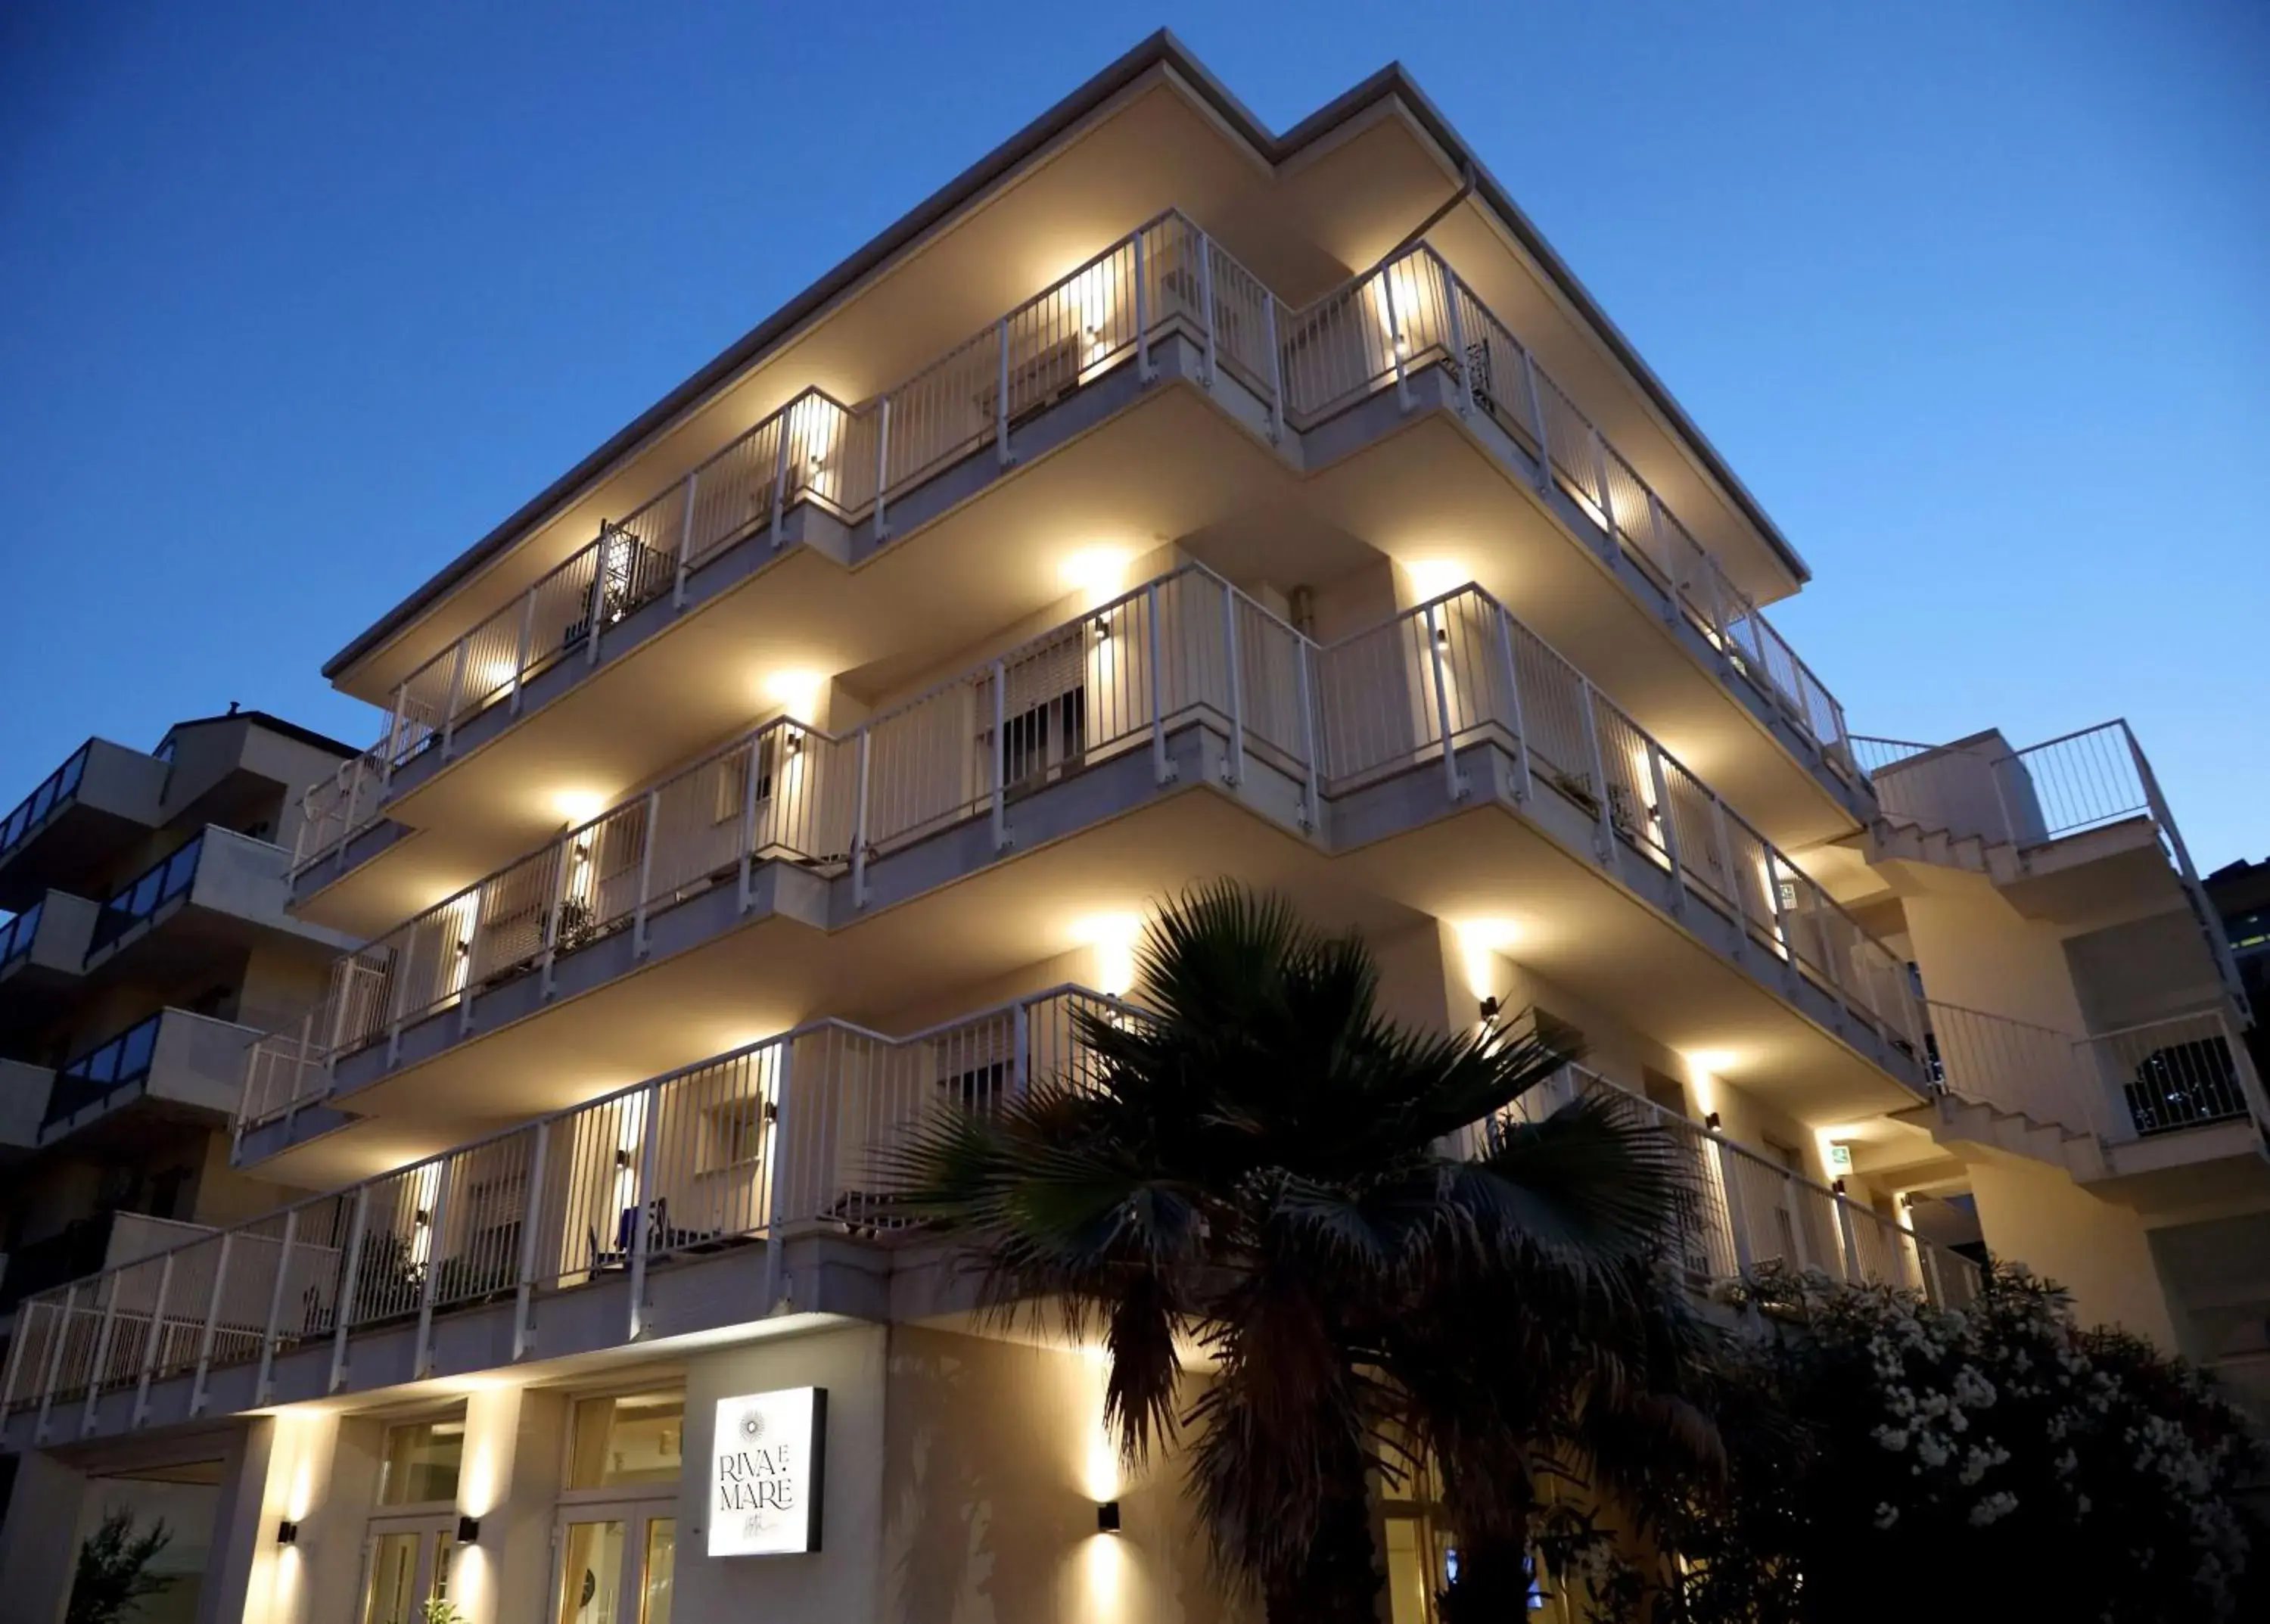 Property Building in Hotel Riva e Mare